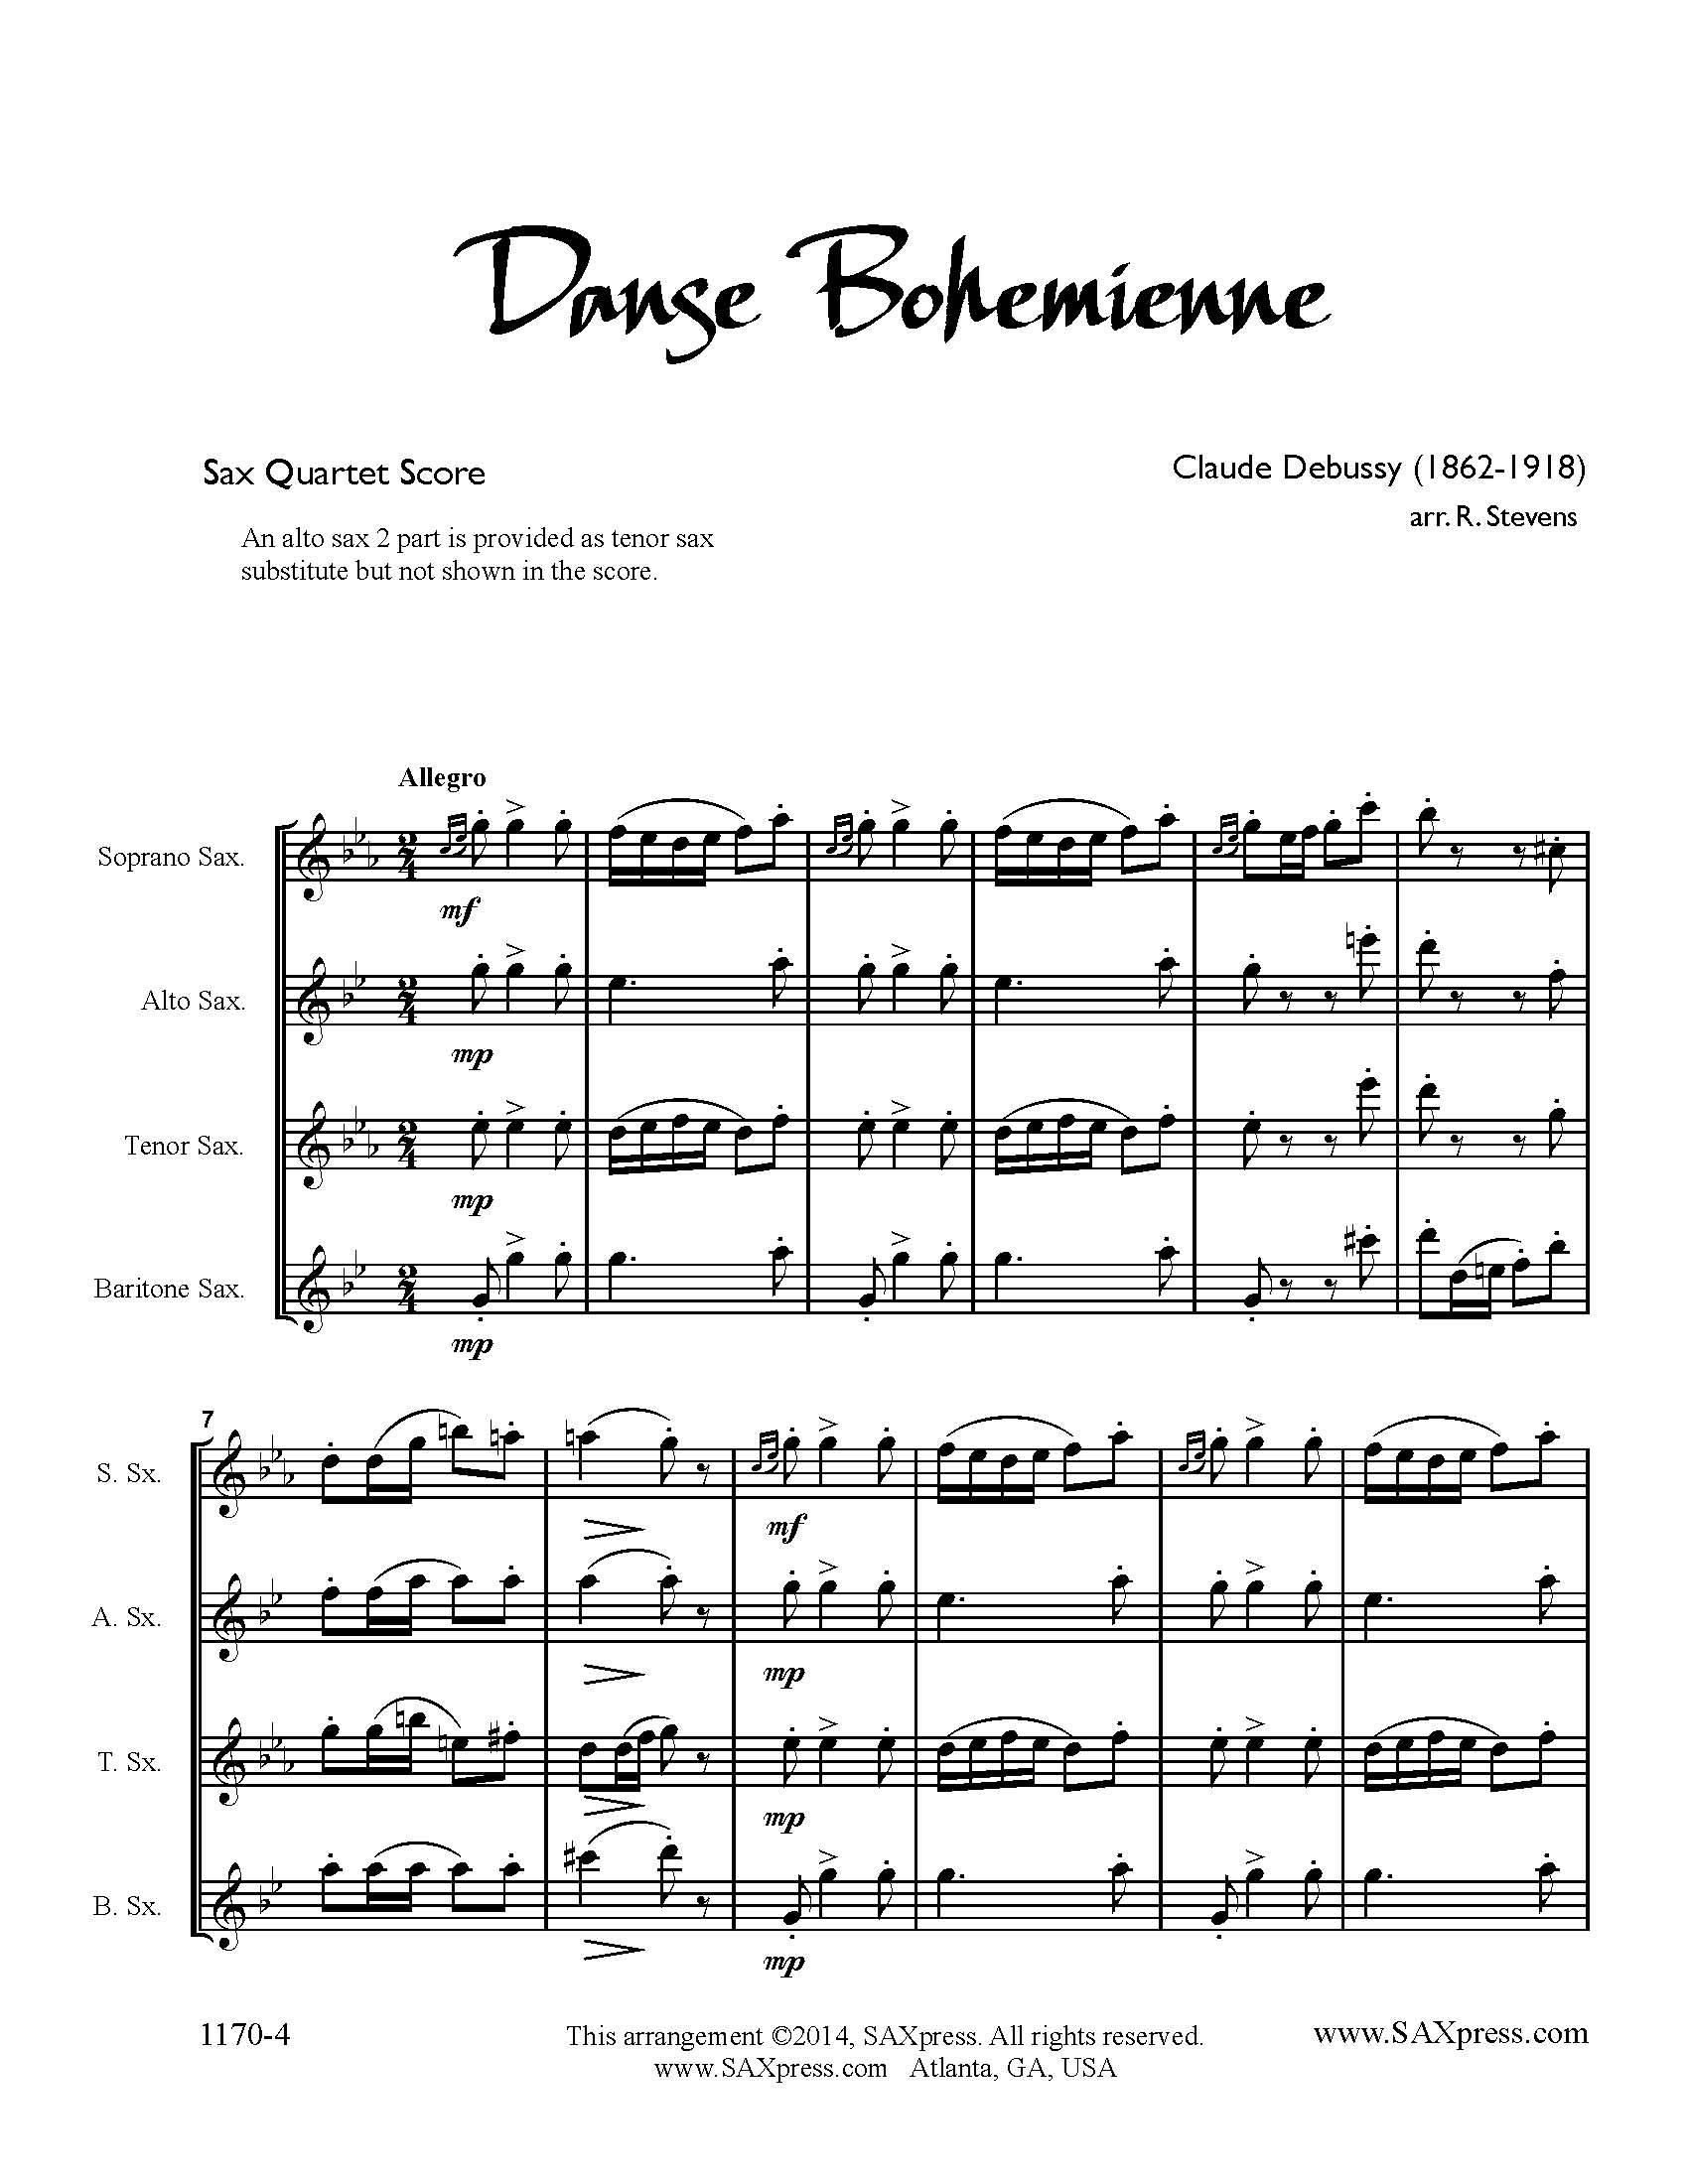 Danse Bohémienne by Debussy arranged for Saxophone Quartet